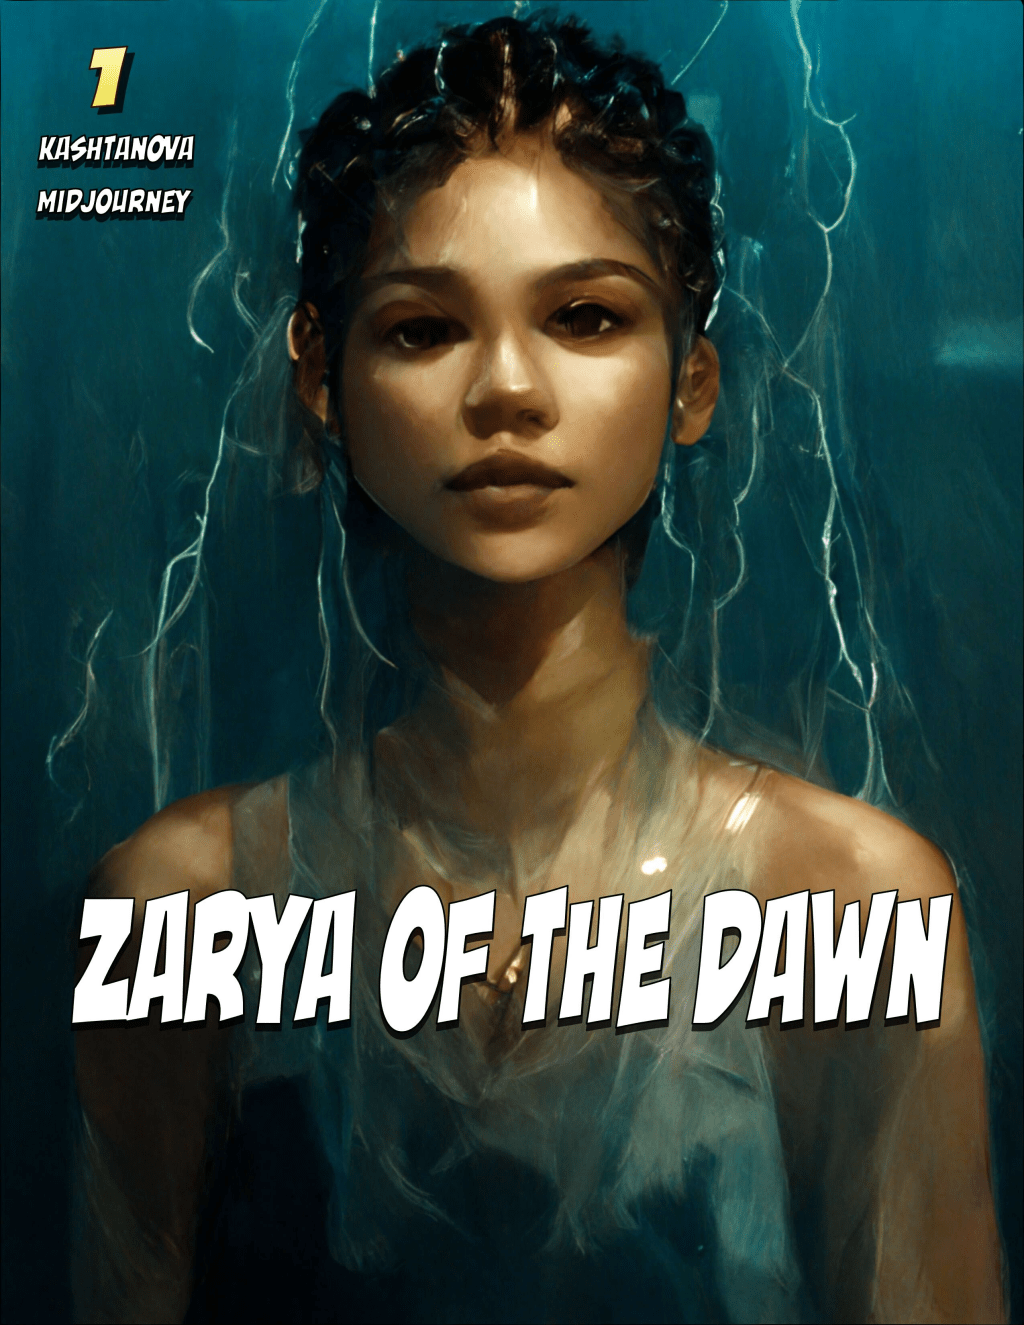 卡什塔诺娃创作了一本名为《Zarya of the Dawn》的漫画书。